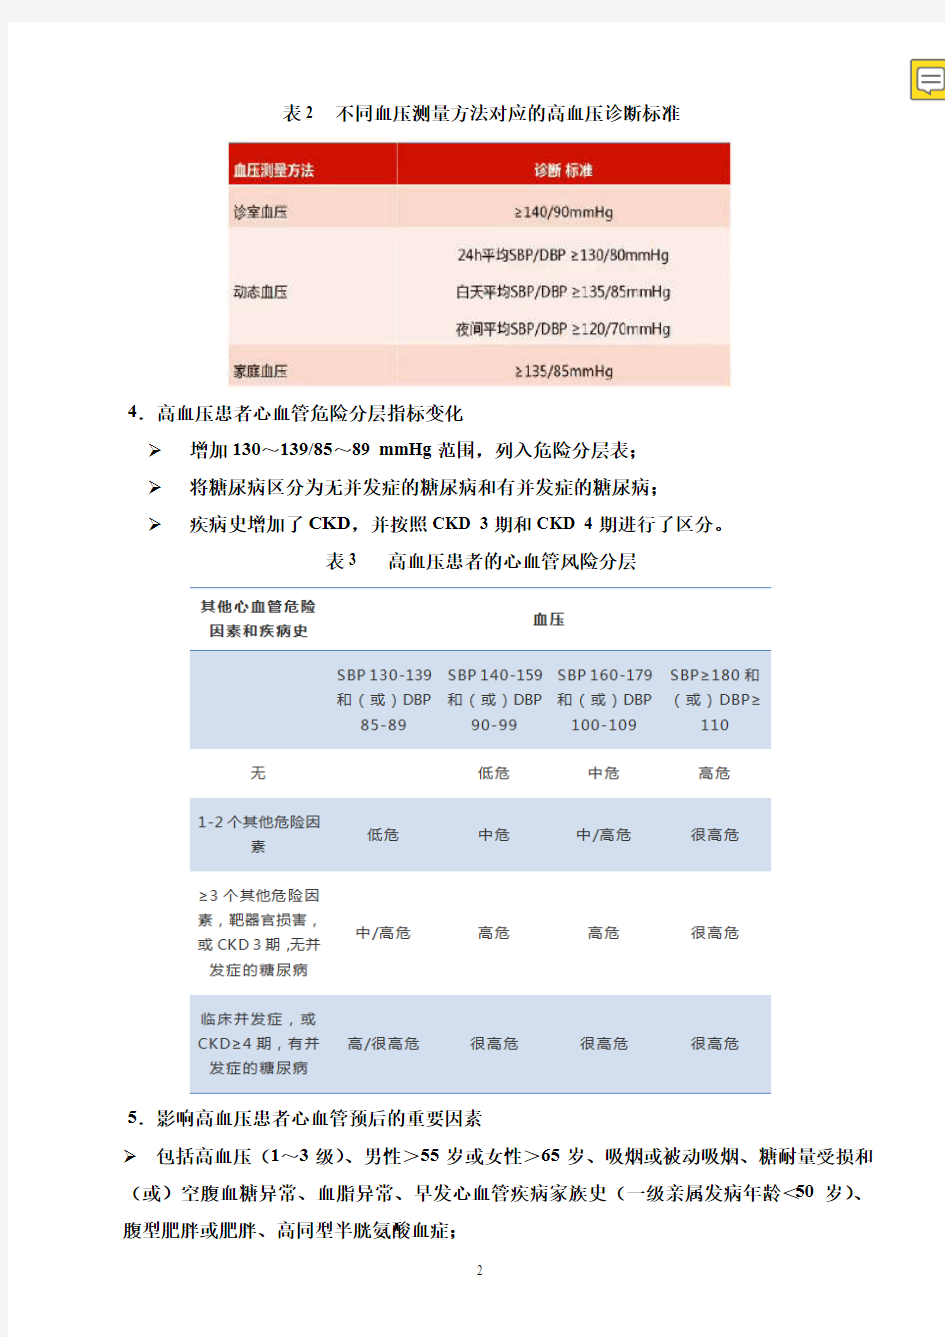 2019年中国高血压防治指南修订版要点解读